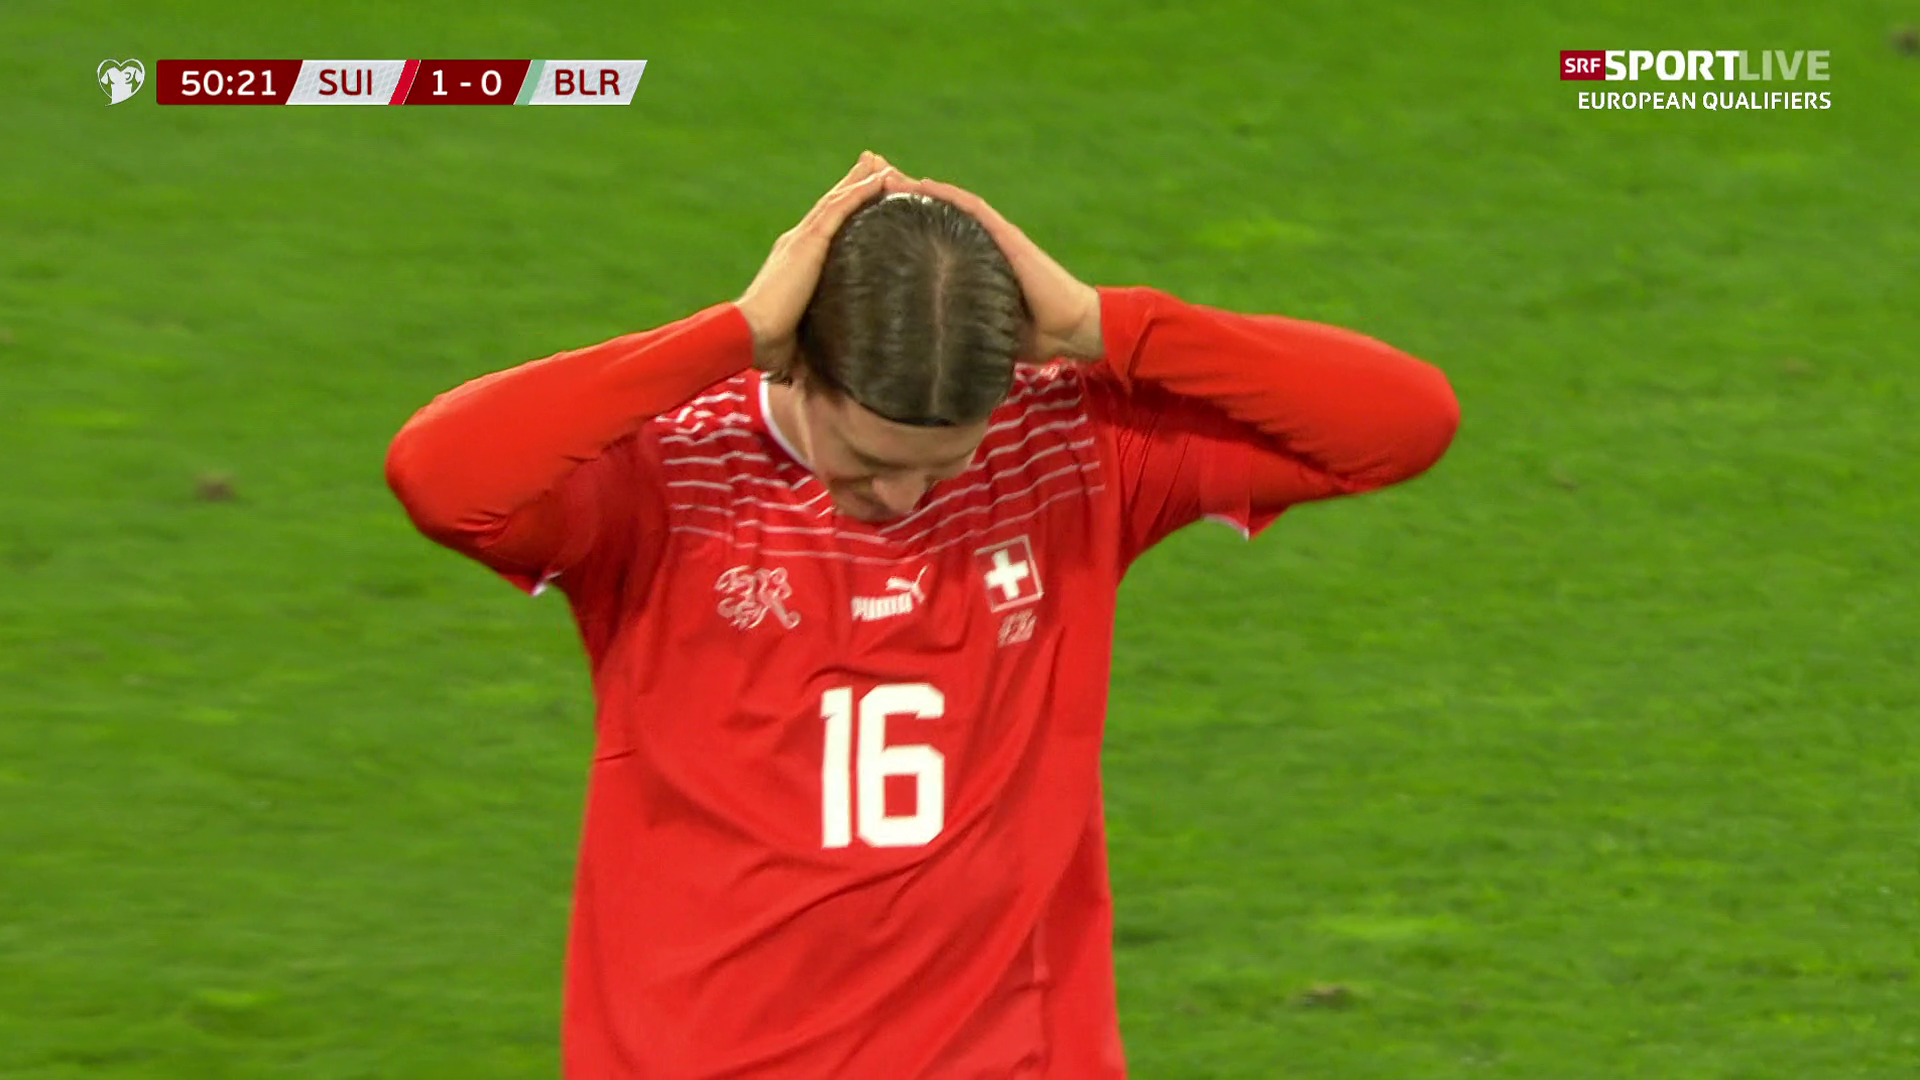 Trotzdem nur ein 33 - Die Schweiz verhindert Blamage gegen Belarus in extremis - Sport